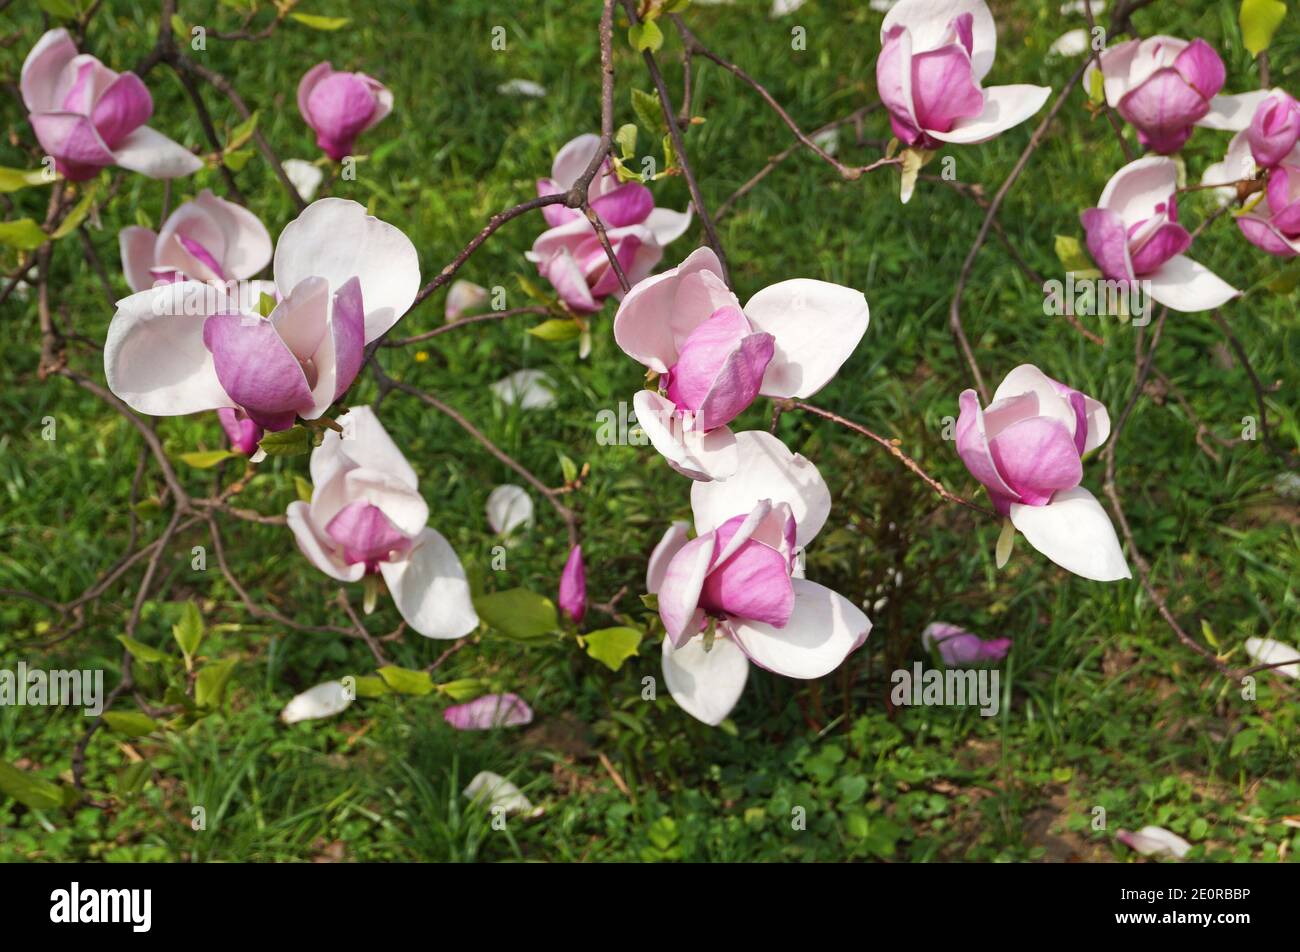 Magnolie mit großen Blüten mit zarten rosa und weißen Blütenblättern Auf einem Zweig mit grünen Blättern im Garten und Im Park an einem Frühlingstag Stockfoto